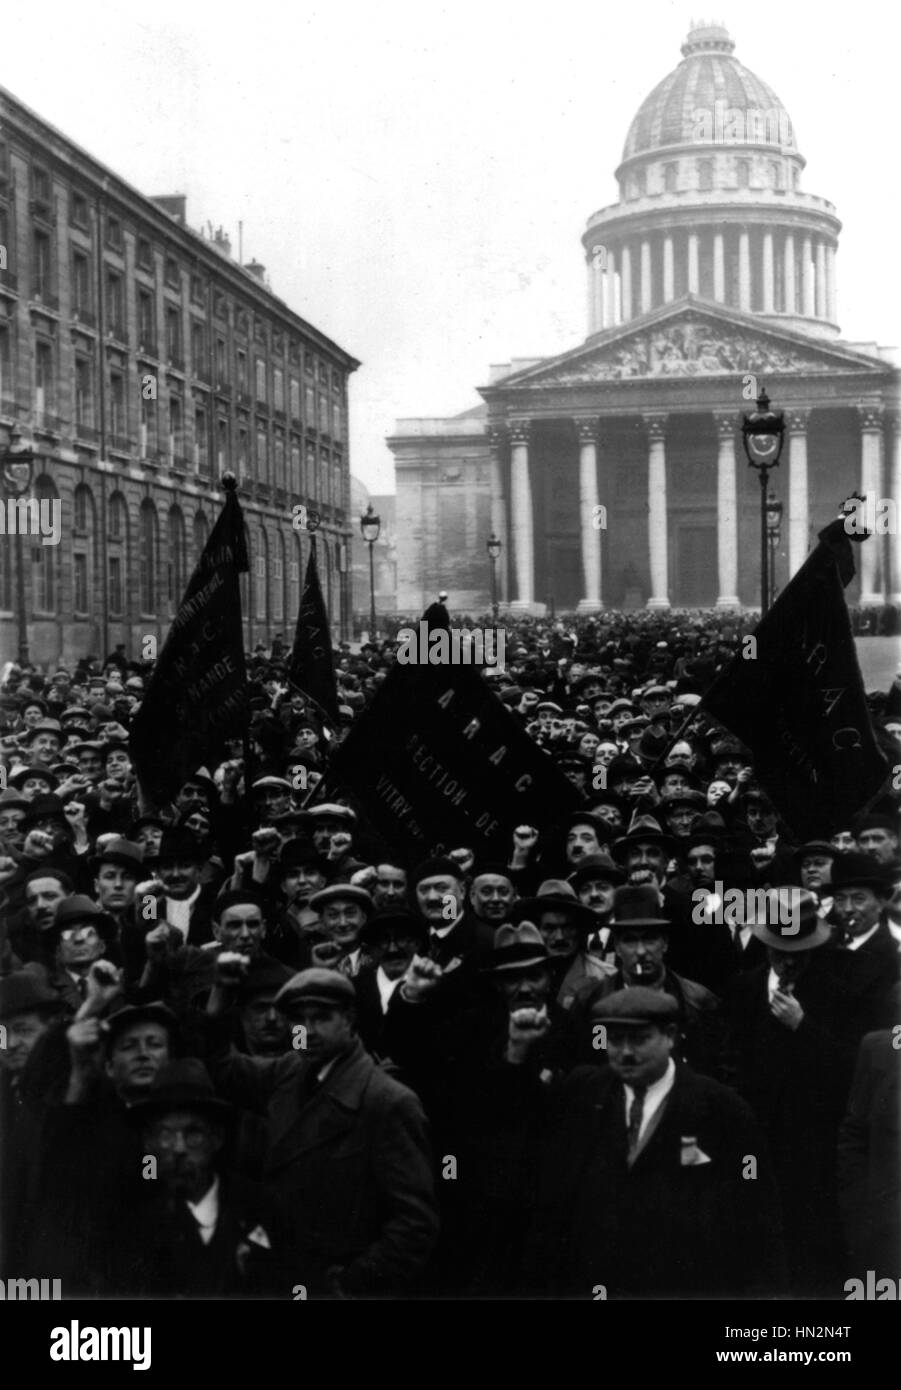 La démonstration de la Place de la Bastille au Panthéon, à Paris. Février 1934 Banque D'Images